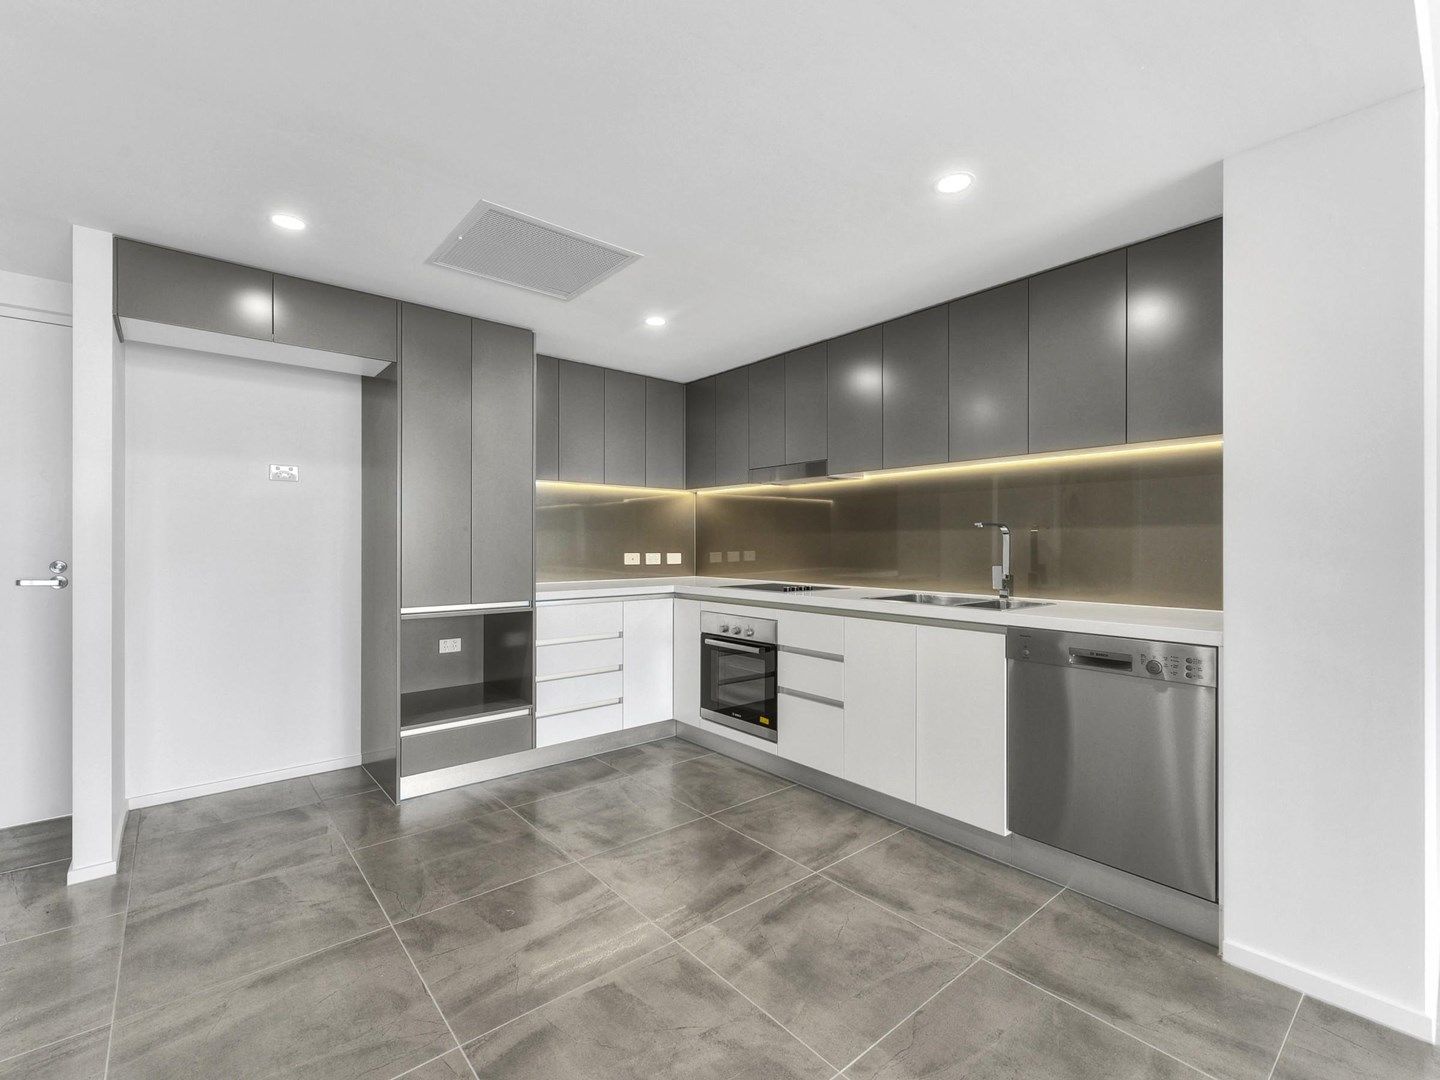 1 bedrooms Apartment / Unit / Flat in Unit 23/45 Wellington Road EAST BRISBANE QLD, 4169